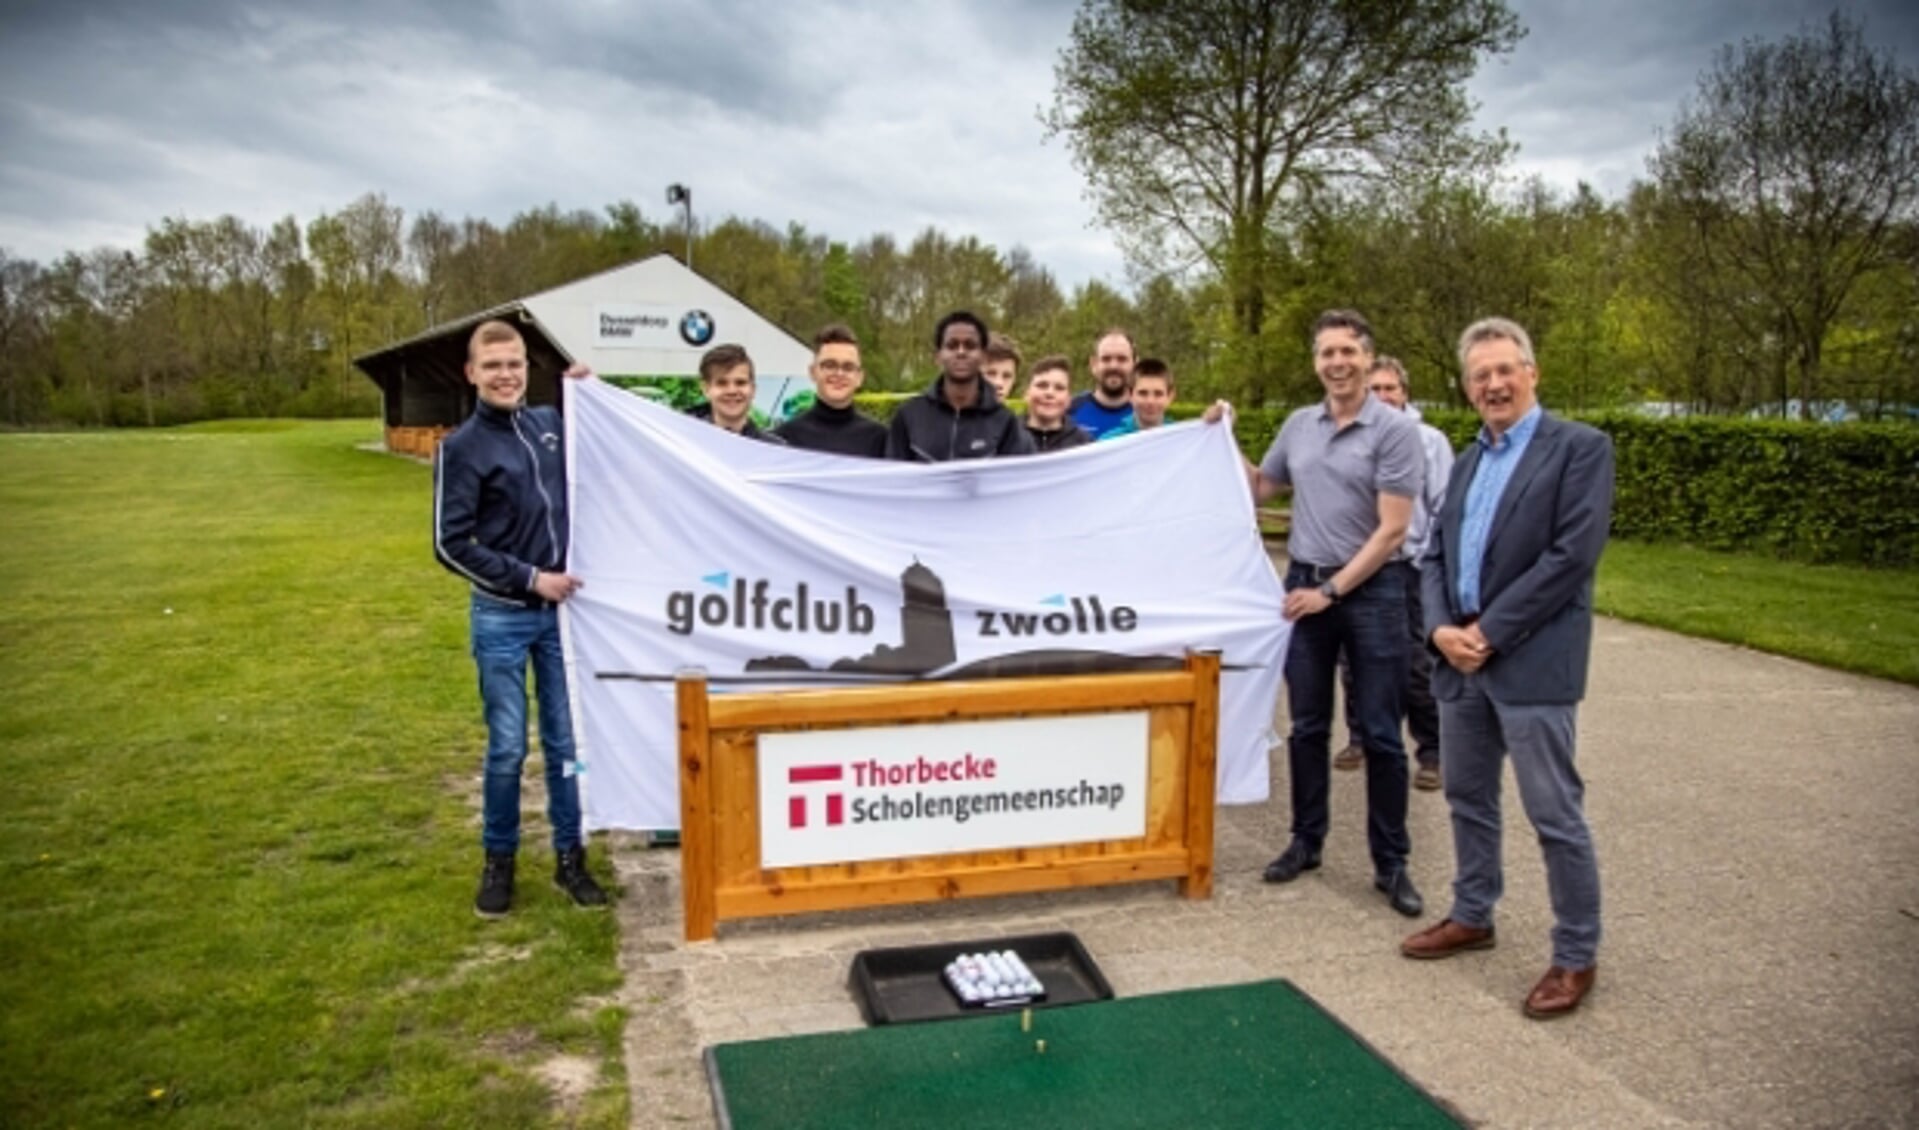 Leerlingen van Thorbecke scholengemeenschap clubmanager Jelle Pauw onthulden een reclamebord bij de dividers van Golfclub Zwolle.